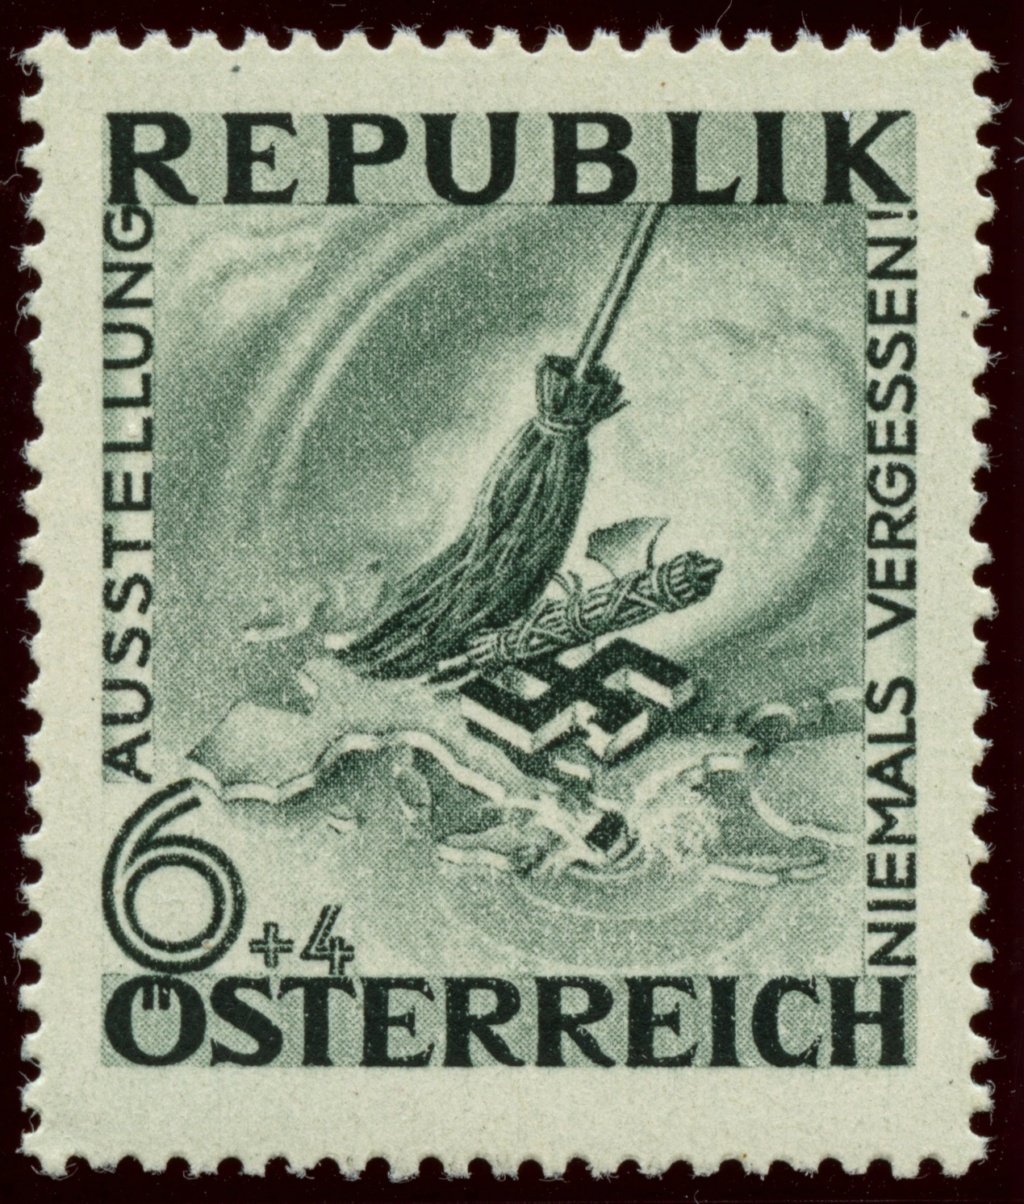 1945 - Österreich, Briefmarken der Jahre 1945-1949 Ank_7815